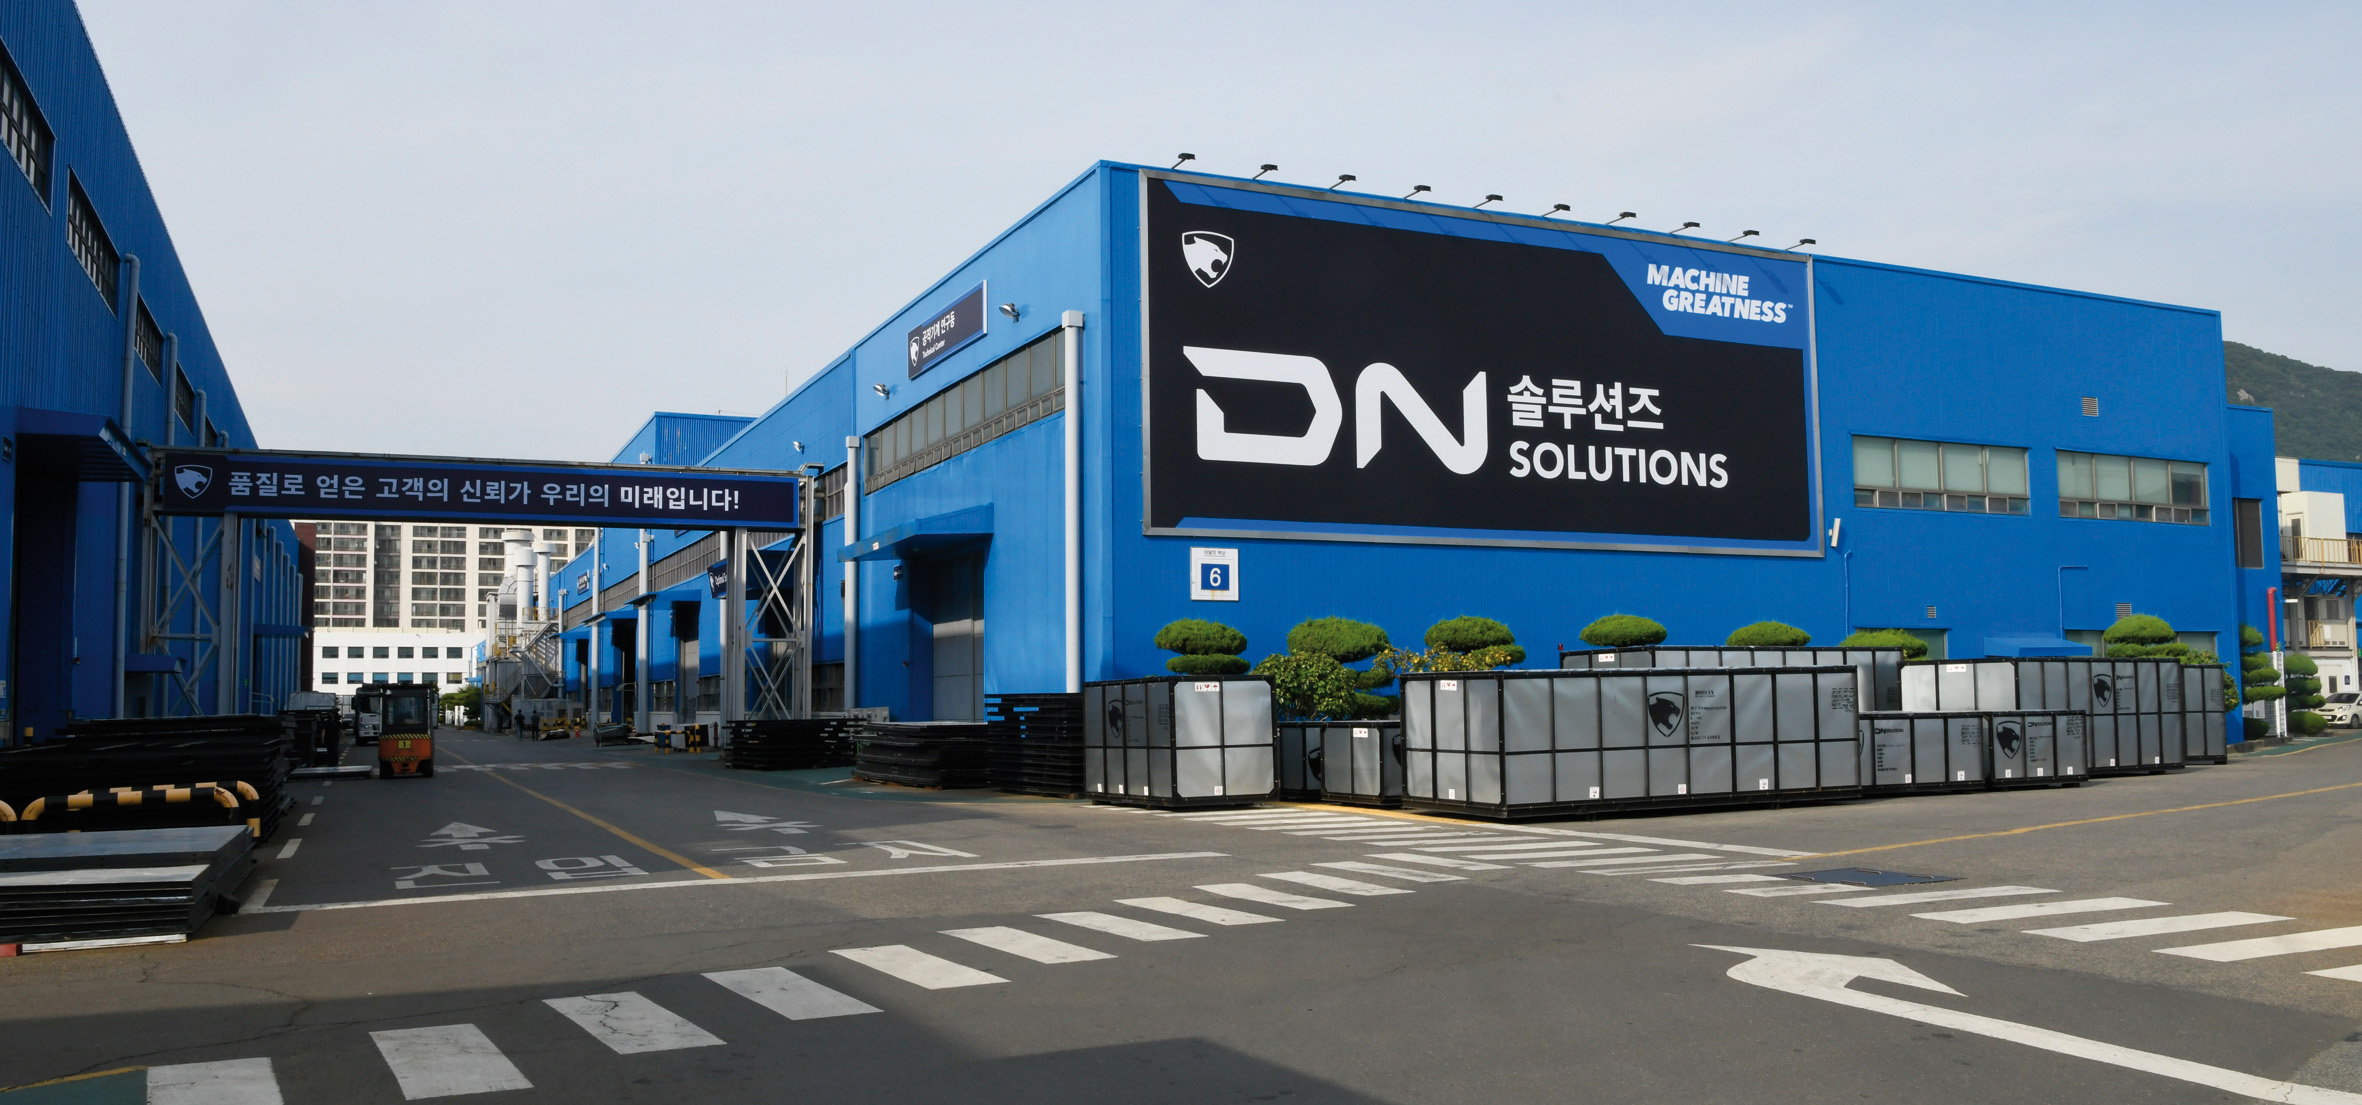 DN Solutions baut Präsenz in Europa weiter aus Erstes Forschungs- und Entwicklungszentrum in Deutschland angekündigt